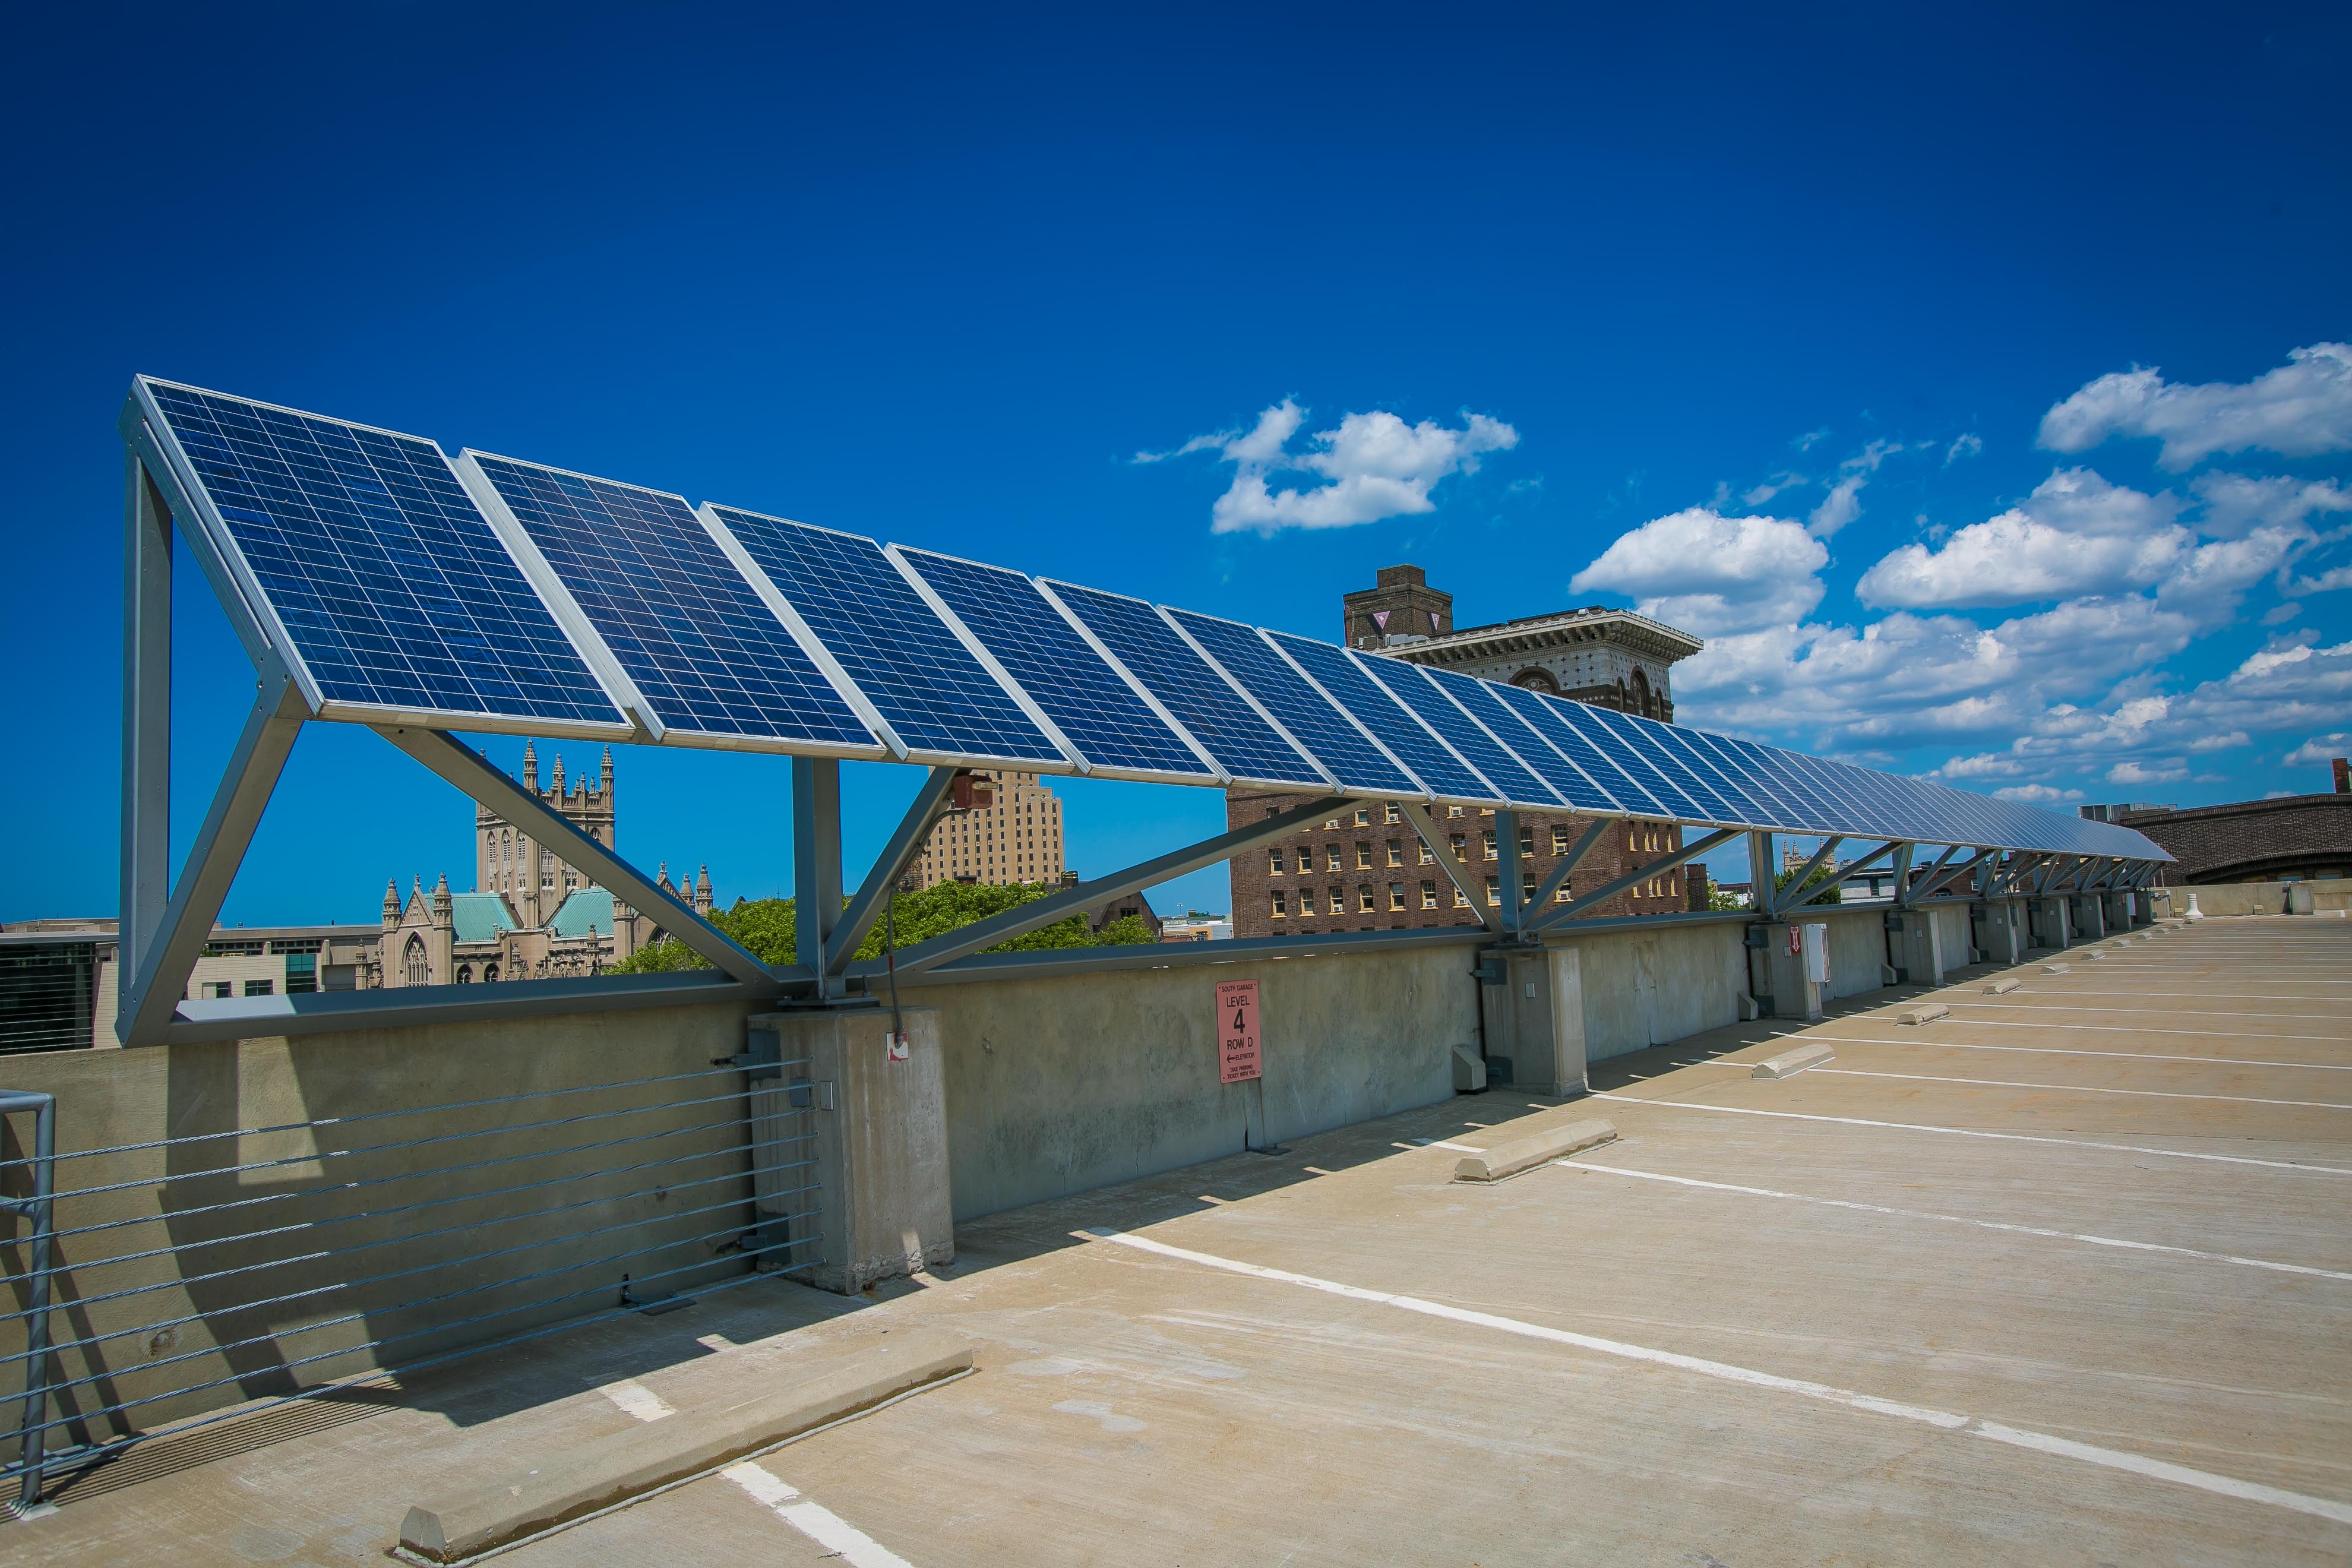 CSU South Garage Solar PV